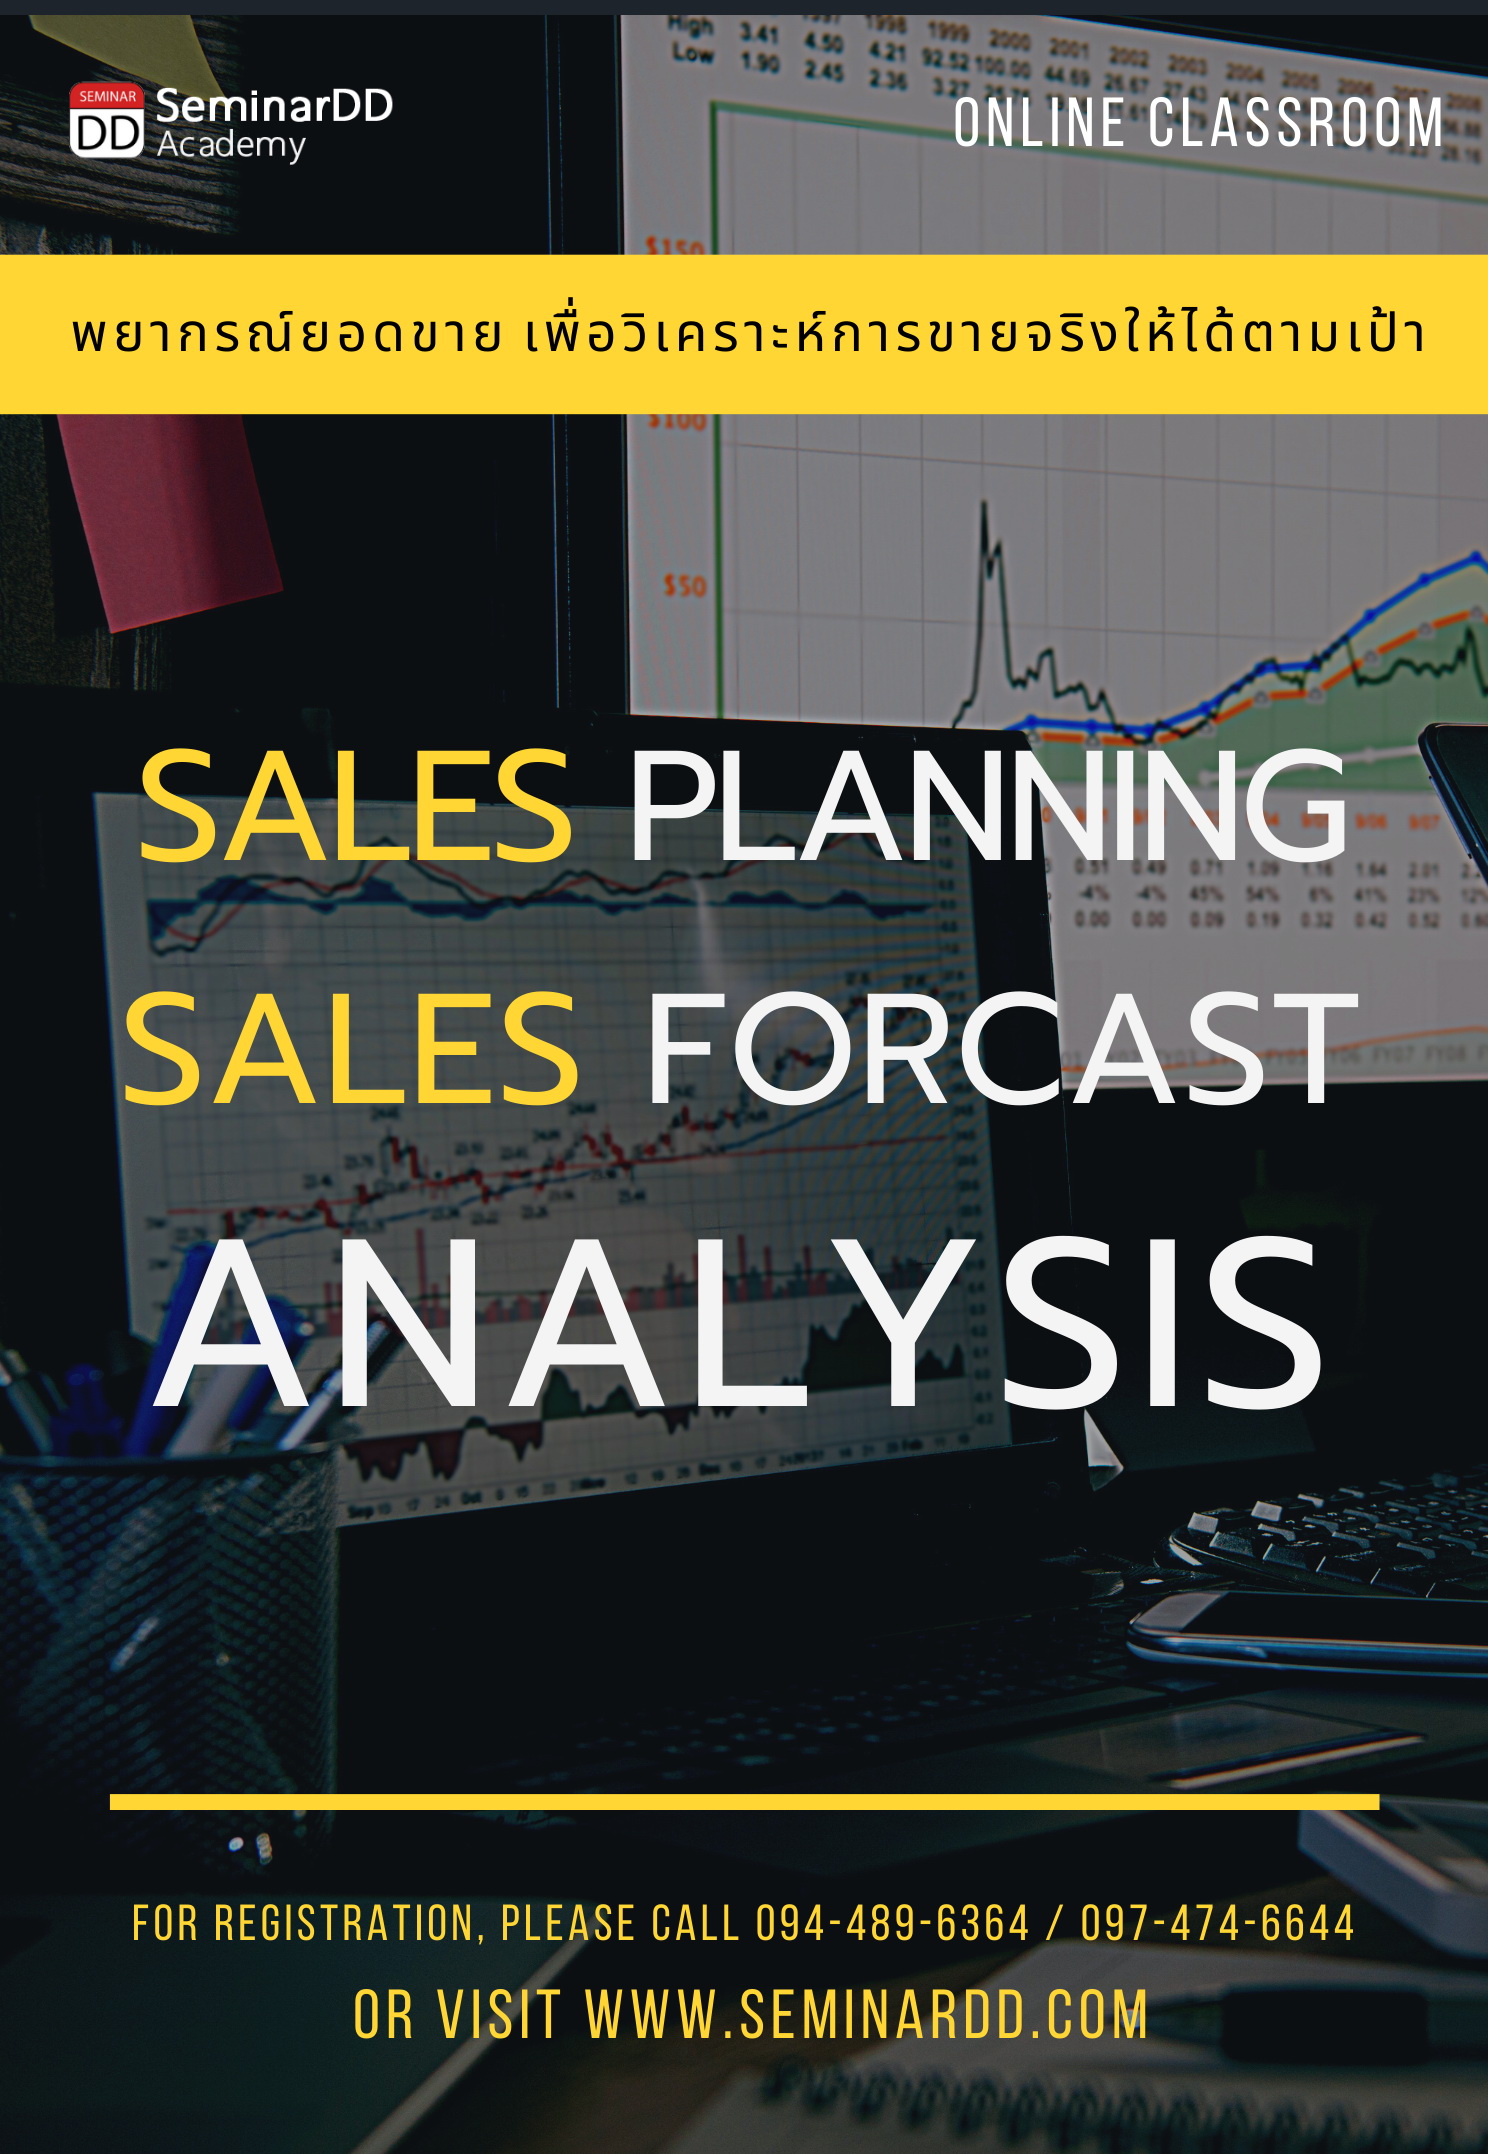 หลักสูตรอบรม หลักสูตร : เทคนิคการพยากรณ์ยอดขายเพื่อวิเคราะห์การขายจริงให้ได้ตามเป้า ( Sales Planning & Sales Forecast Analysis ) อบรมในรูปแบบ Classroom